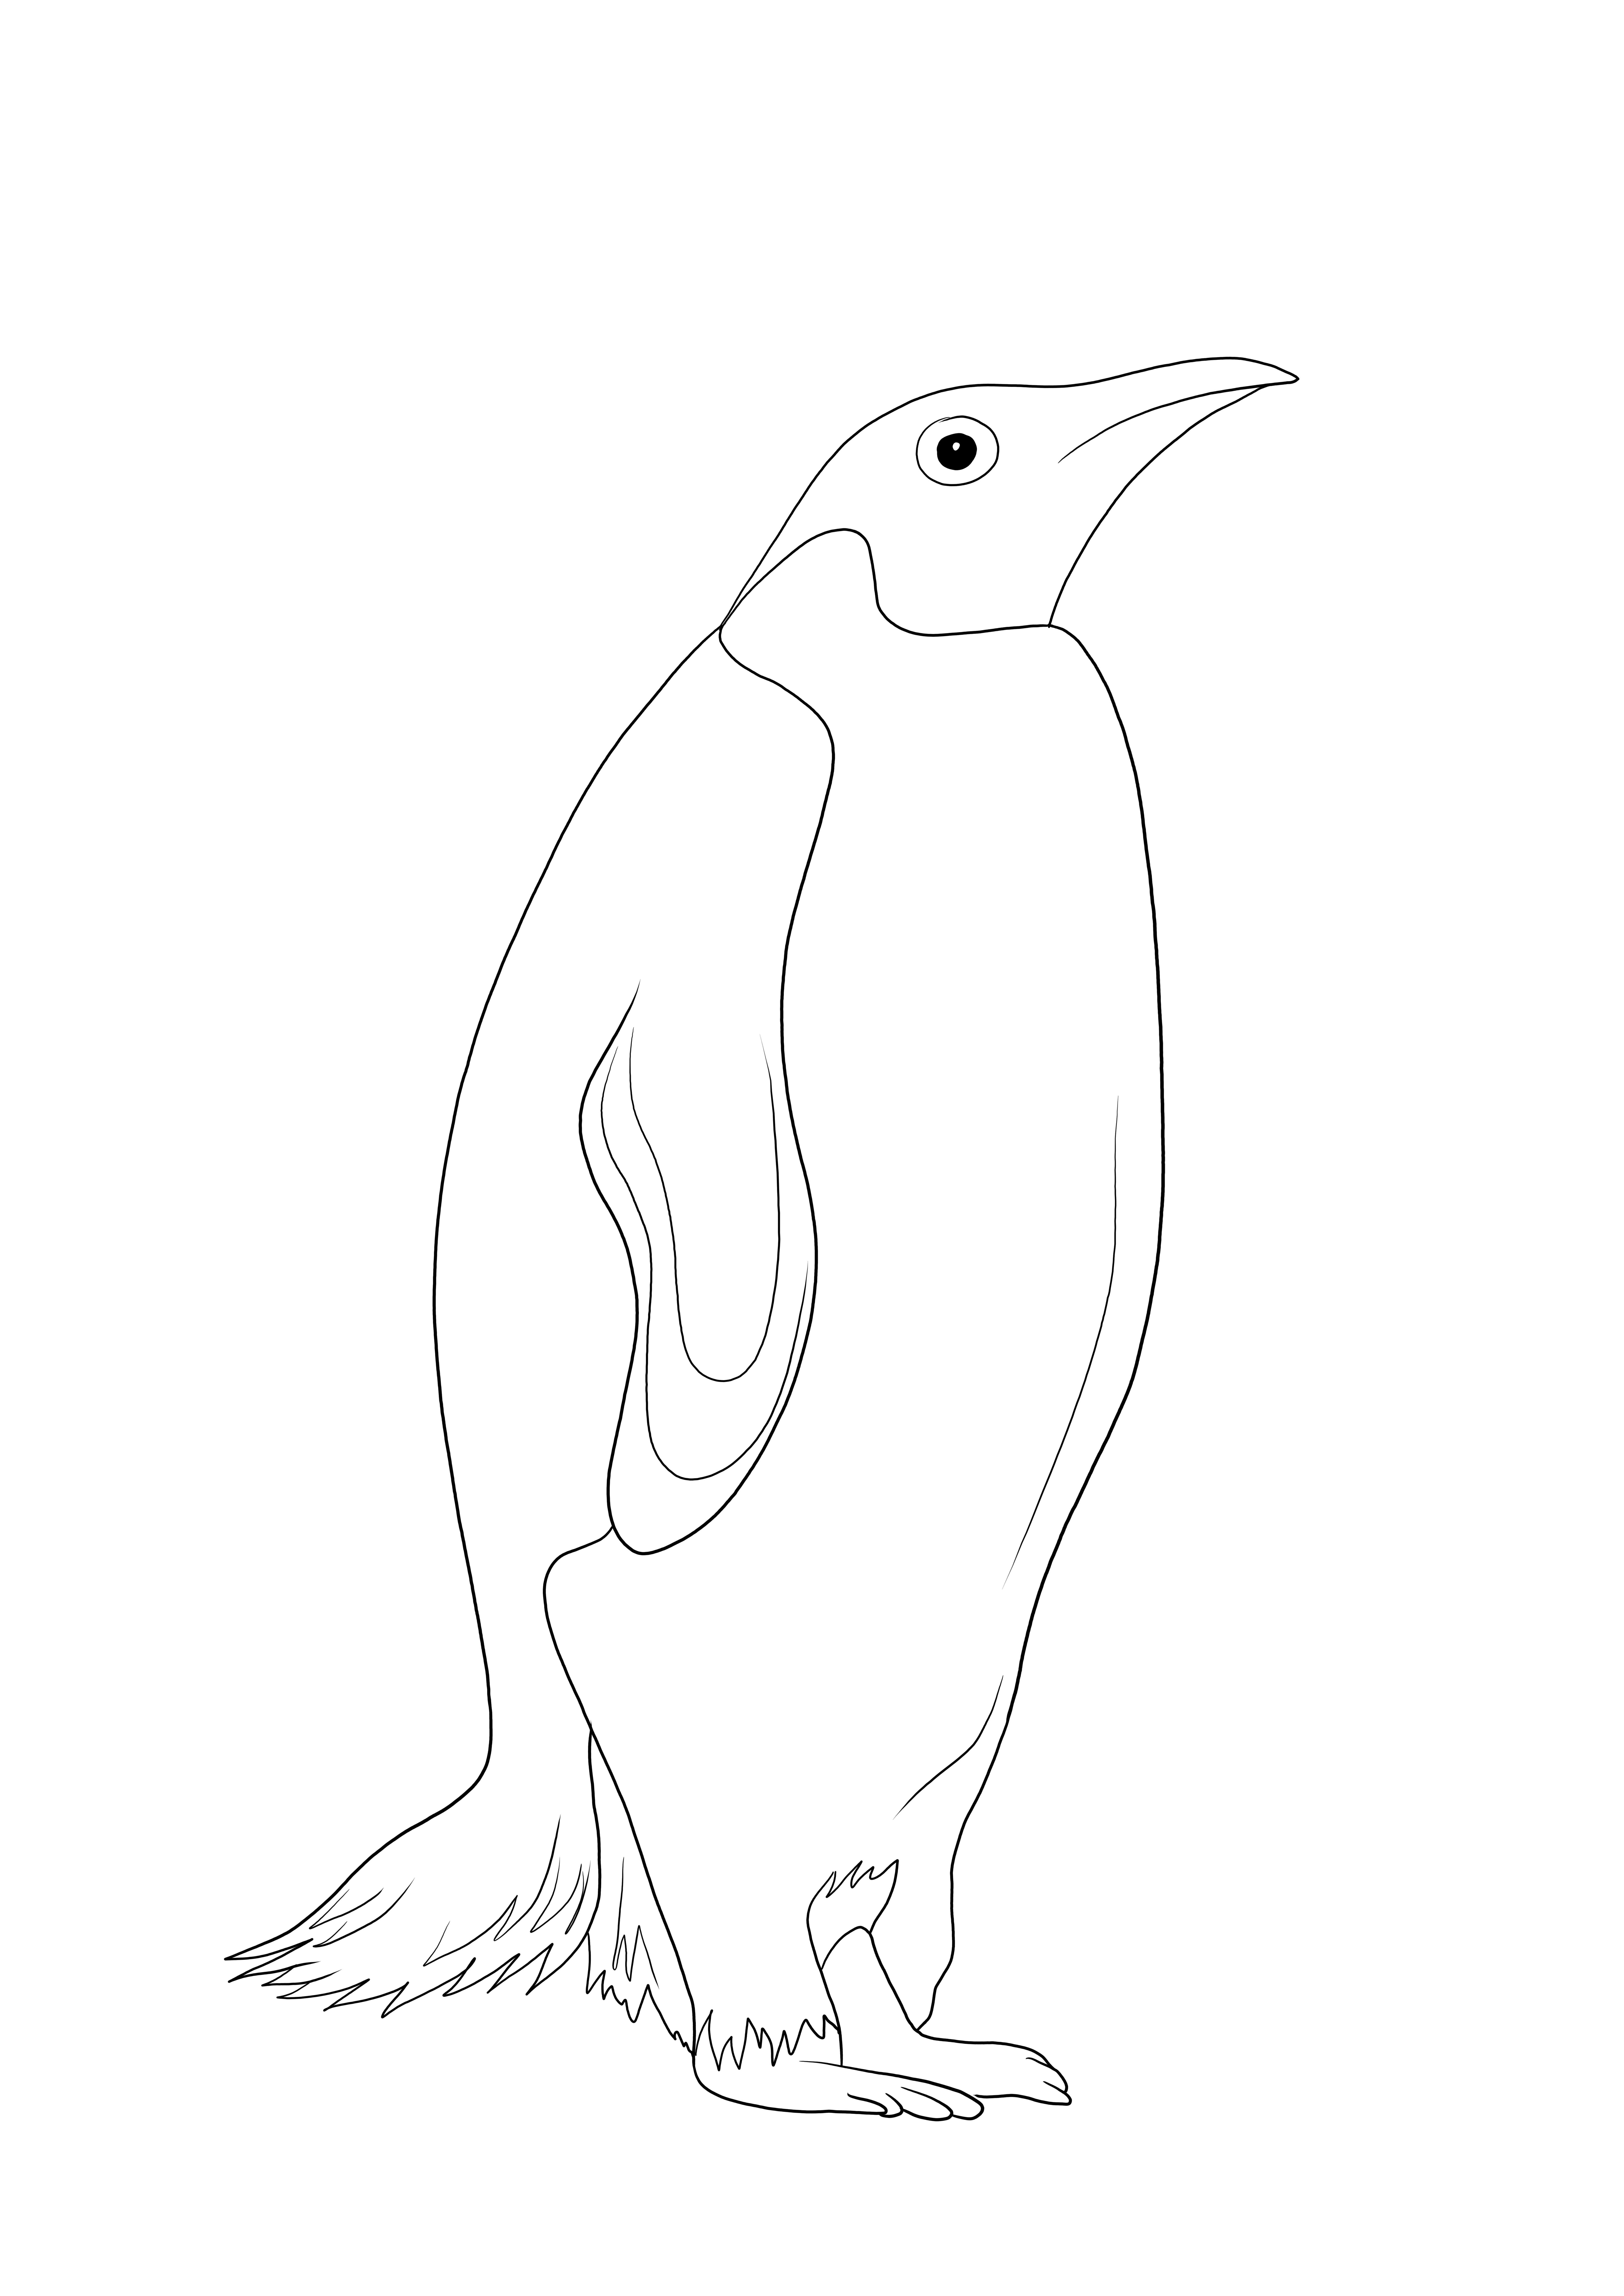 A folha de colorir inteligente e gratuita de um pinguim - uma ótima ferramenta para aprender sobre os animais marinhos